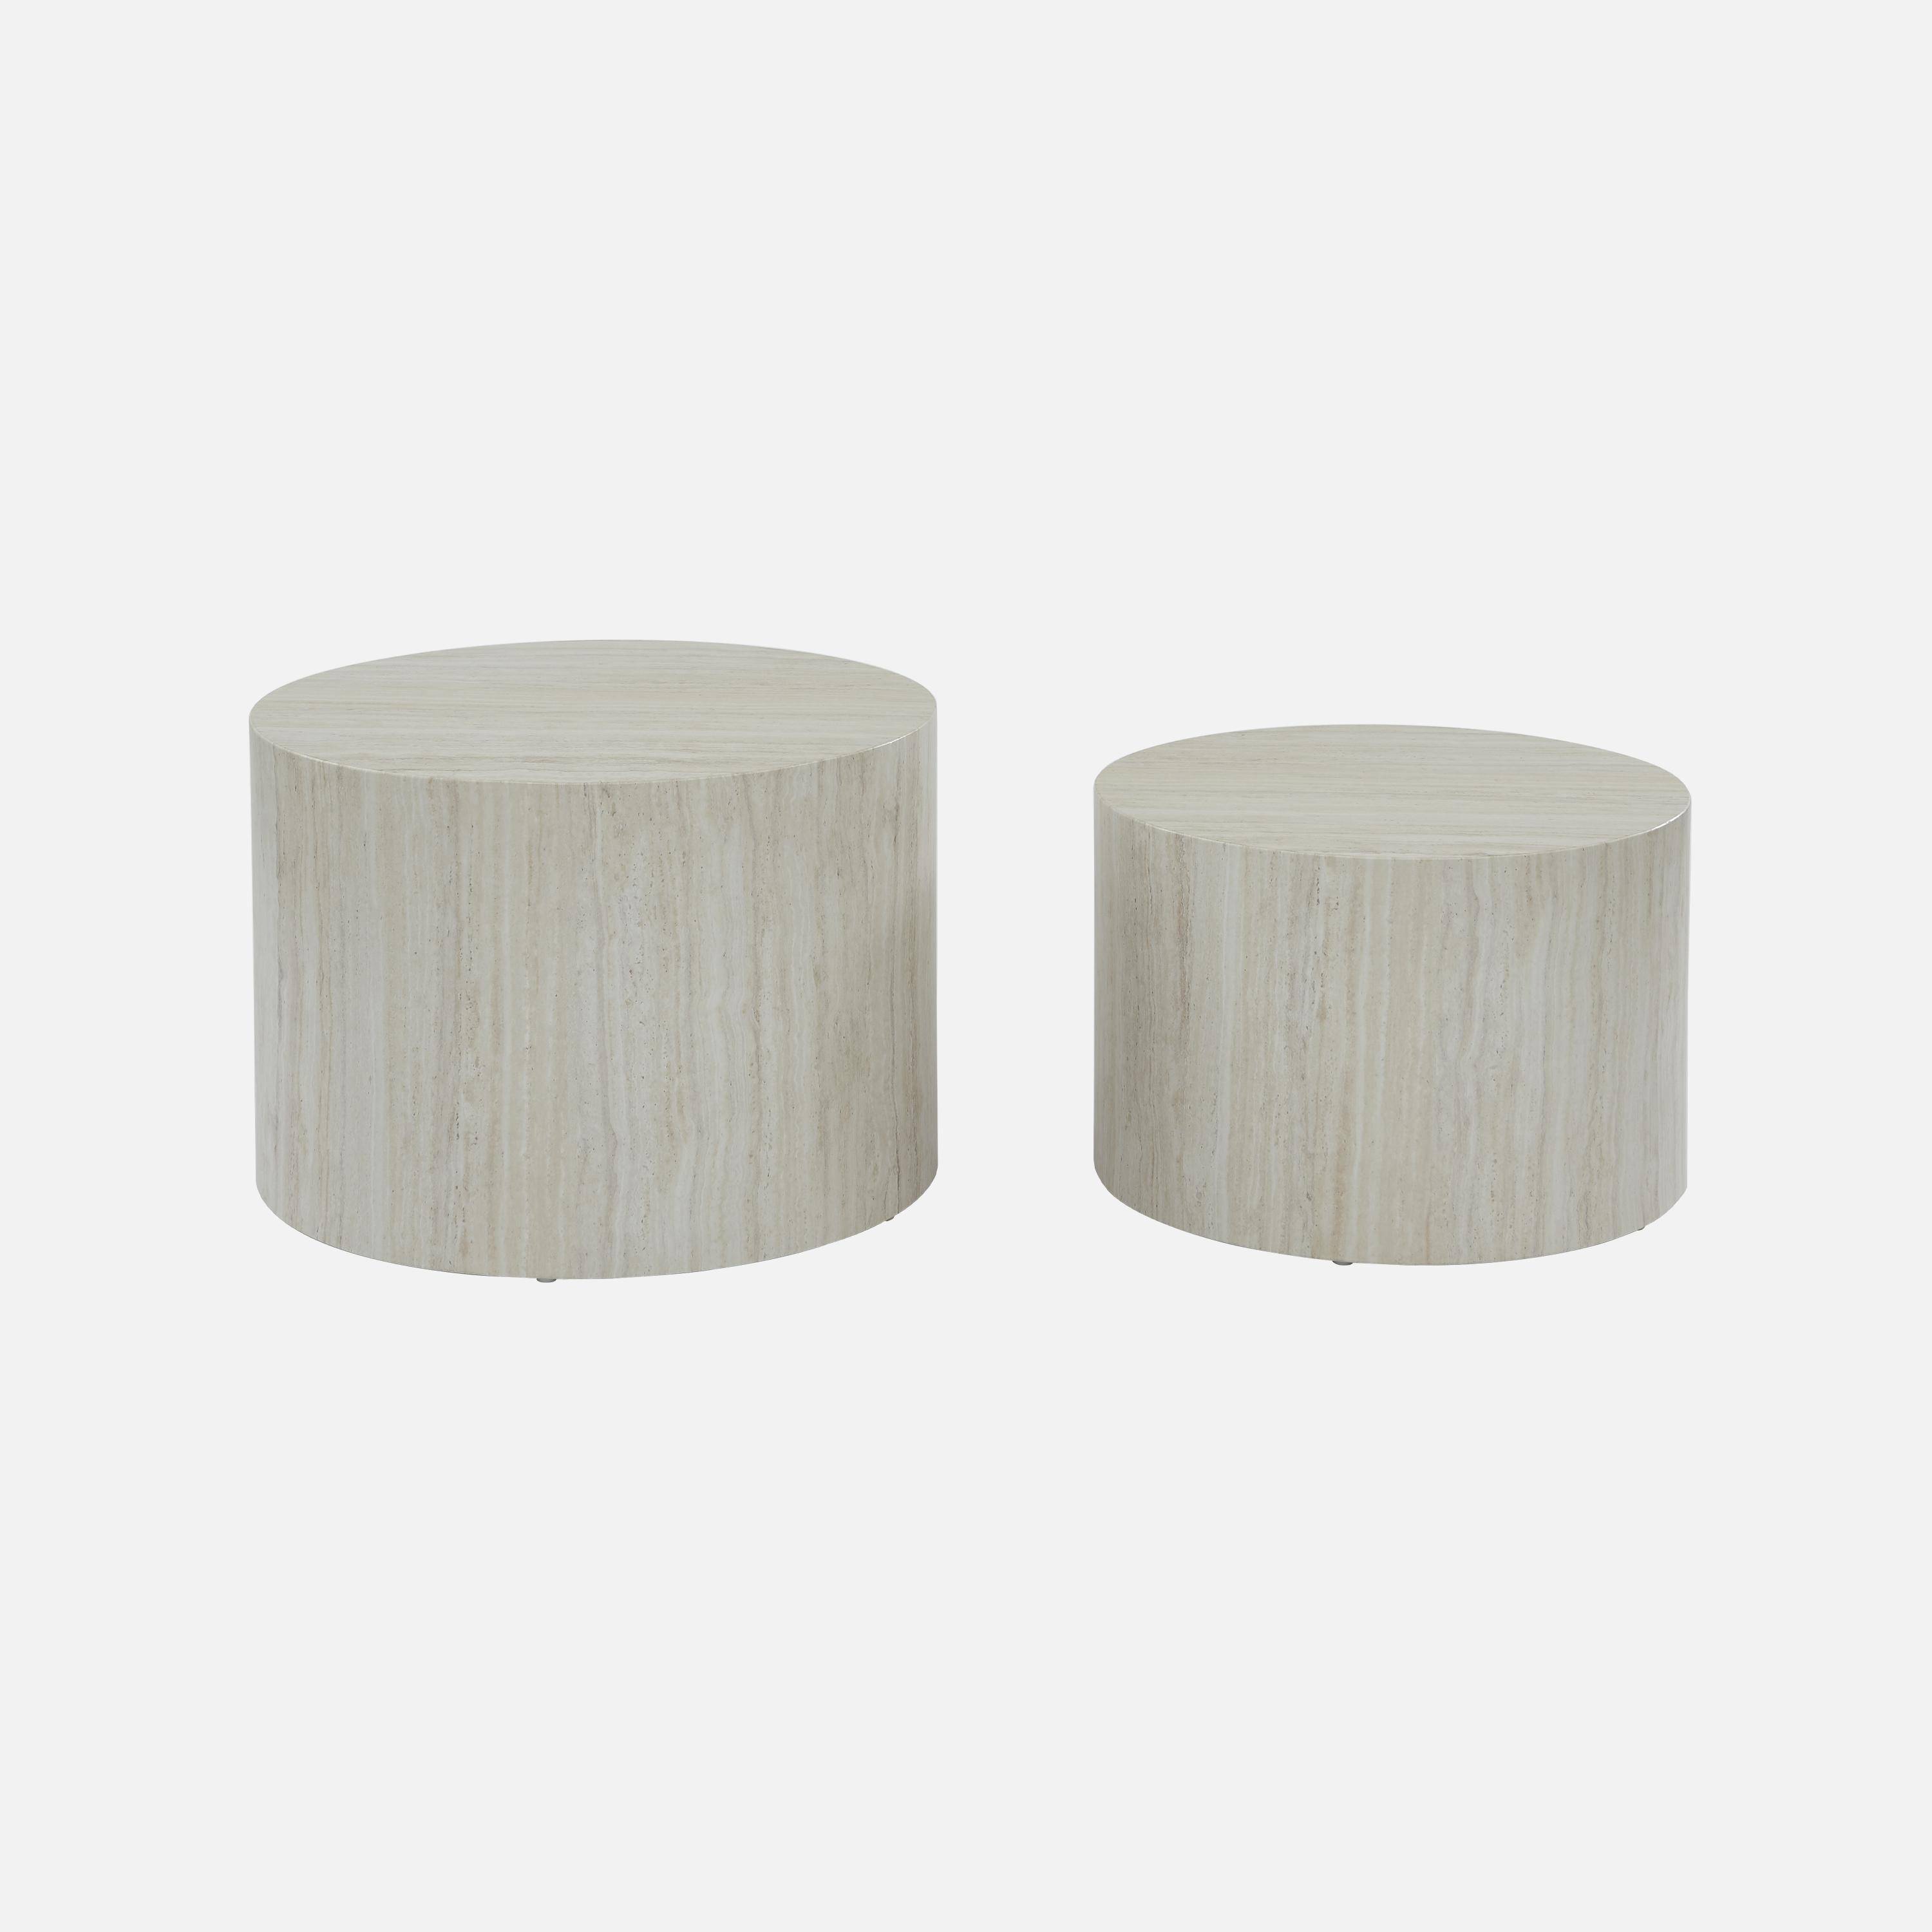 Conjunto de 2 mesas de centro redondas , efeito mármore branco, mesas de encaixe Ø58 x A 40cm / Ø50 x A 33cm Photo4